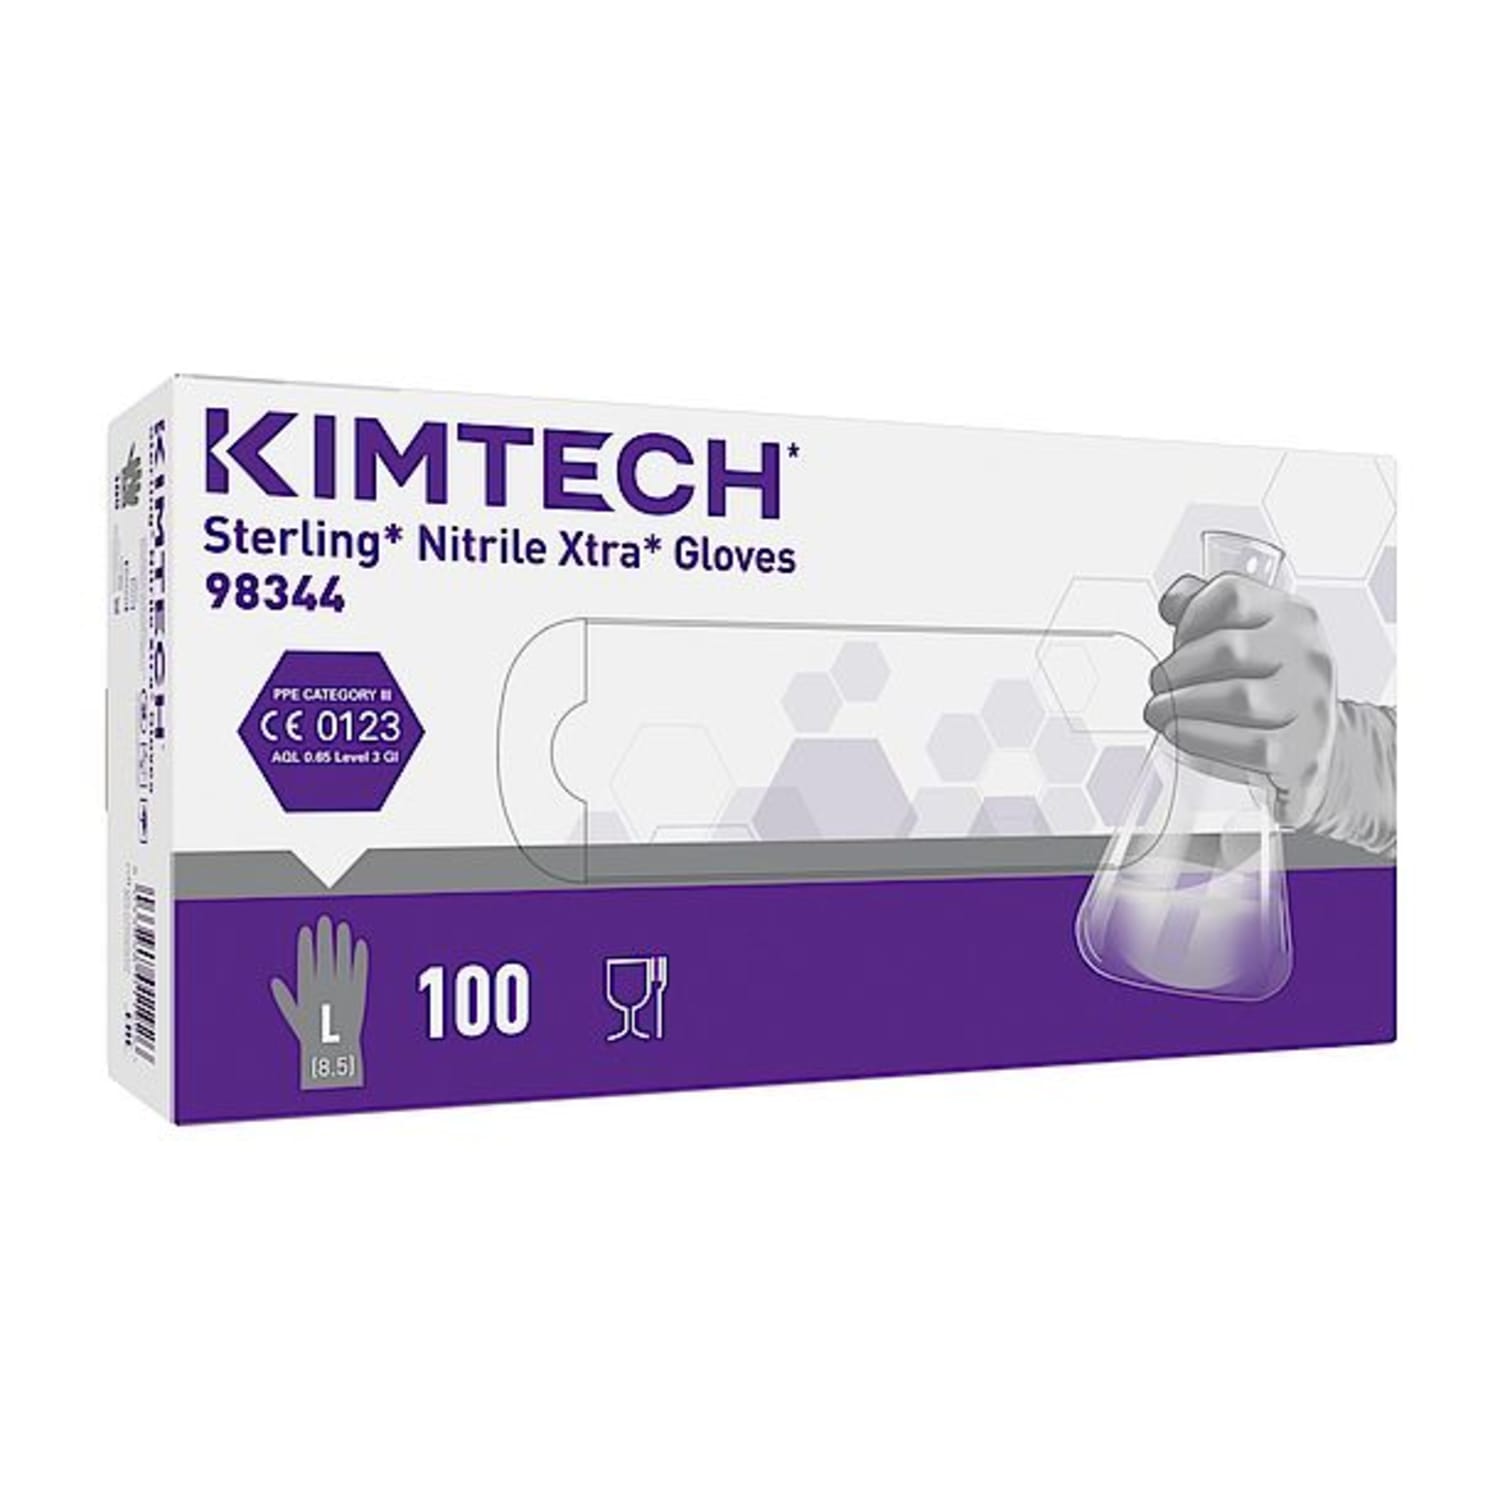 Gant de protection chimique nitrile Kimtech Science Sterling Xtra gris non poudré 30cm taille L photo du produit Side View ZOOM